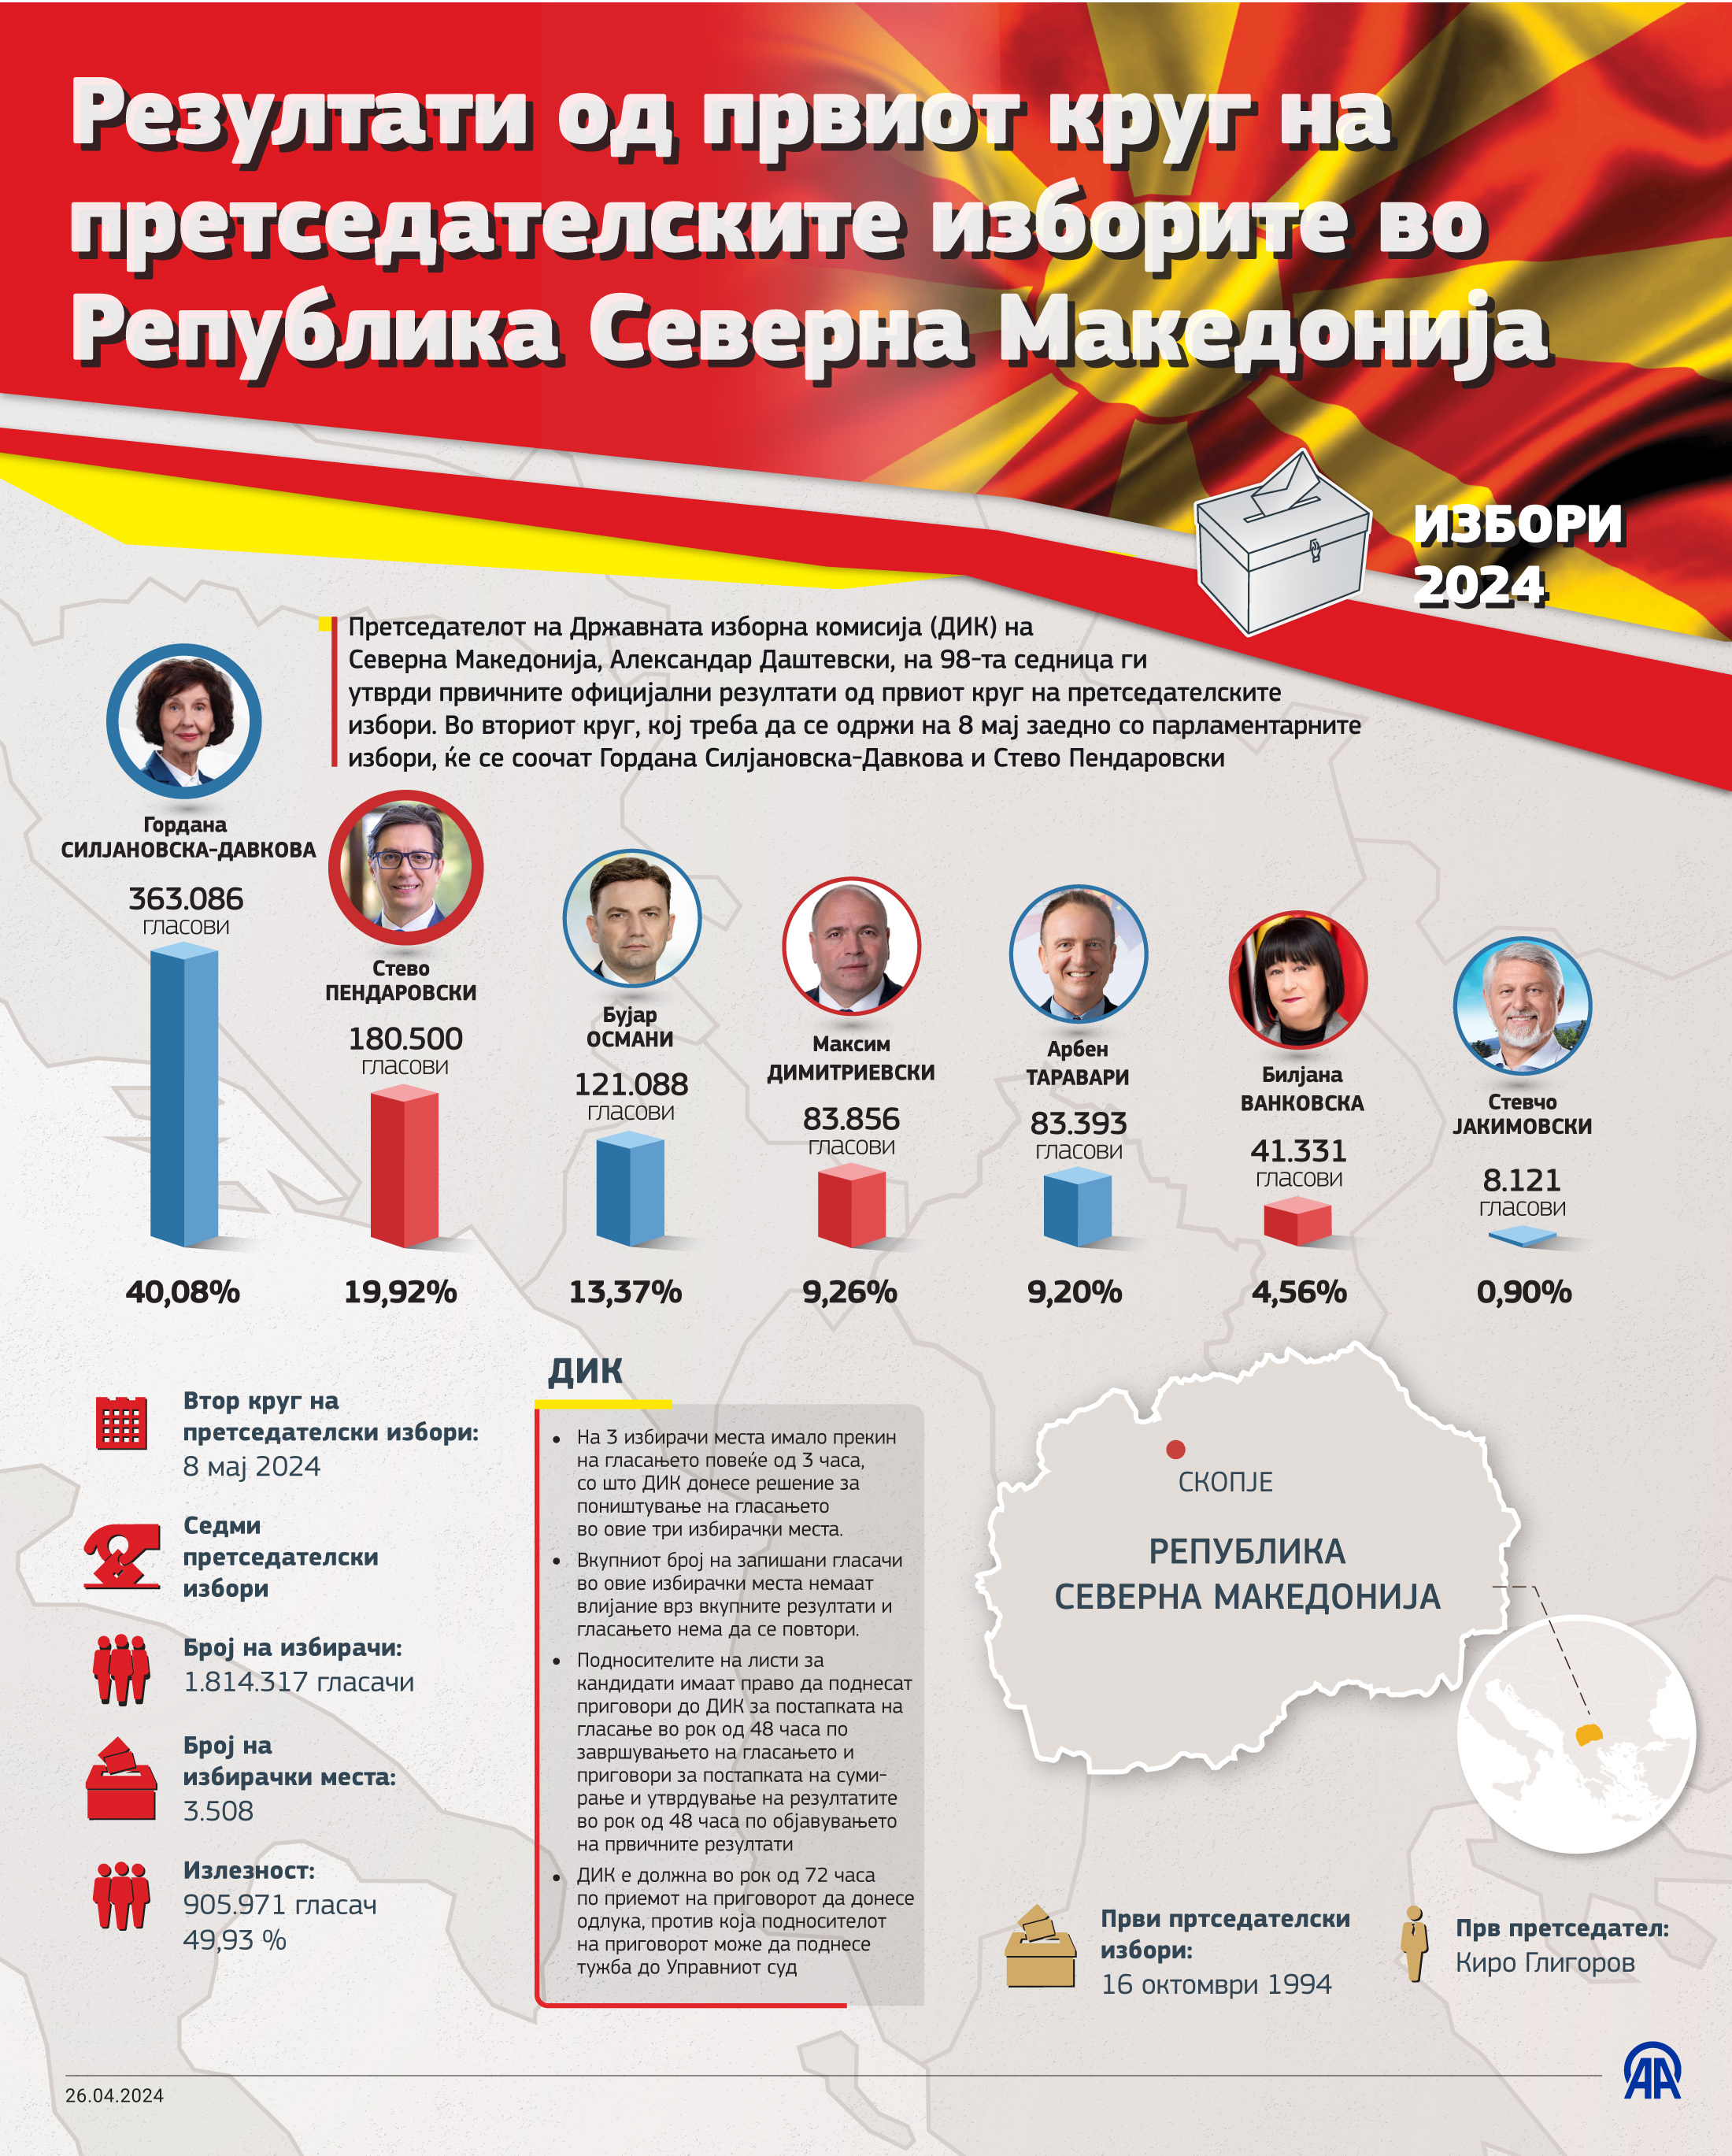 Државната изборна комисија на Северна Македонија ги утврди првичните официјални резултати од гласањето